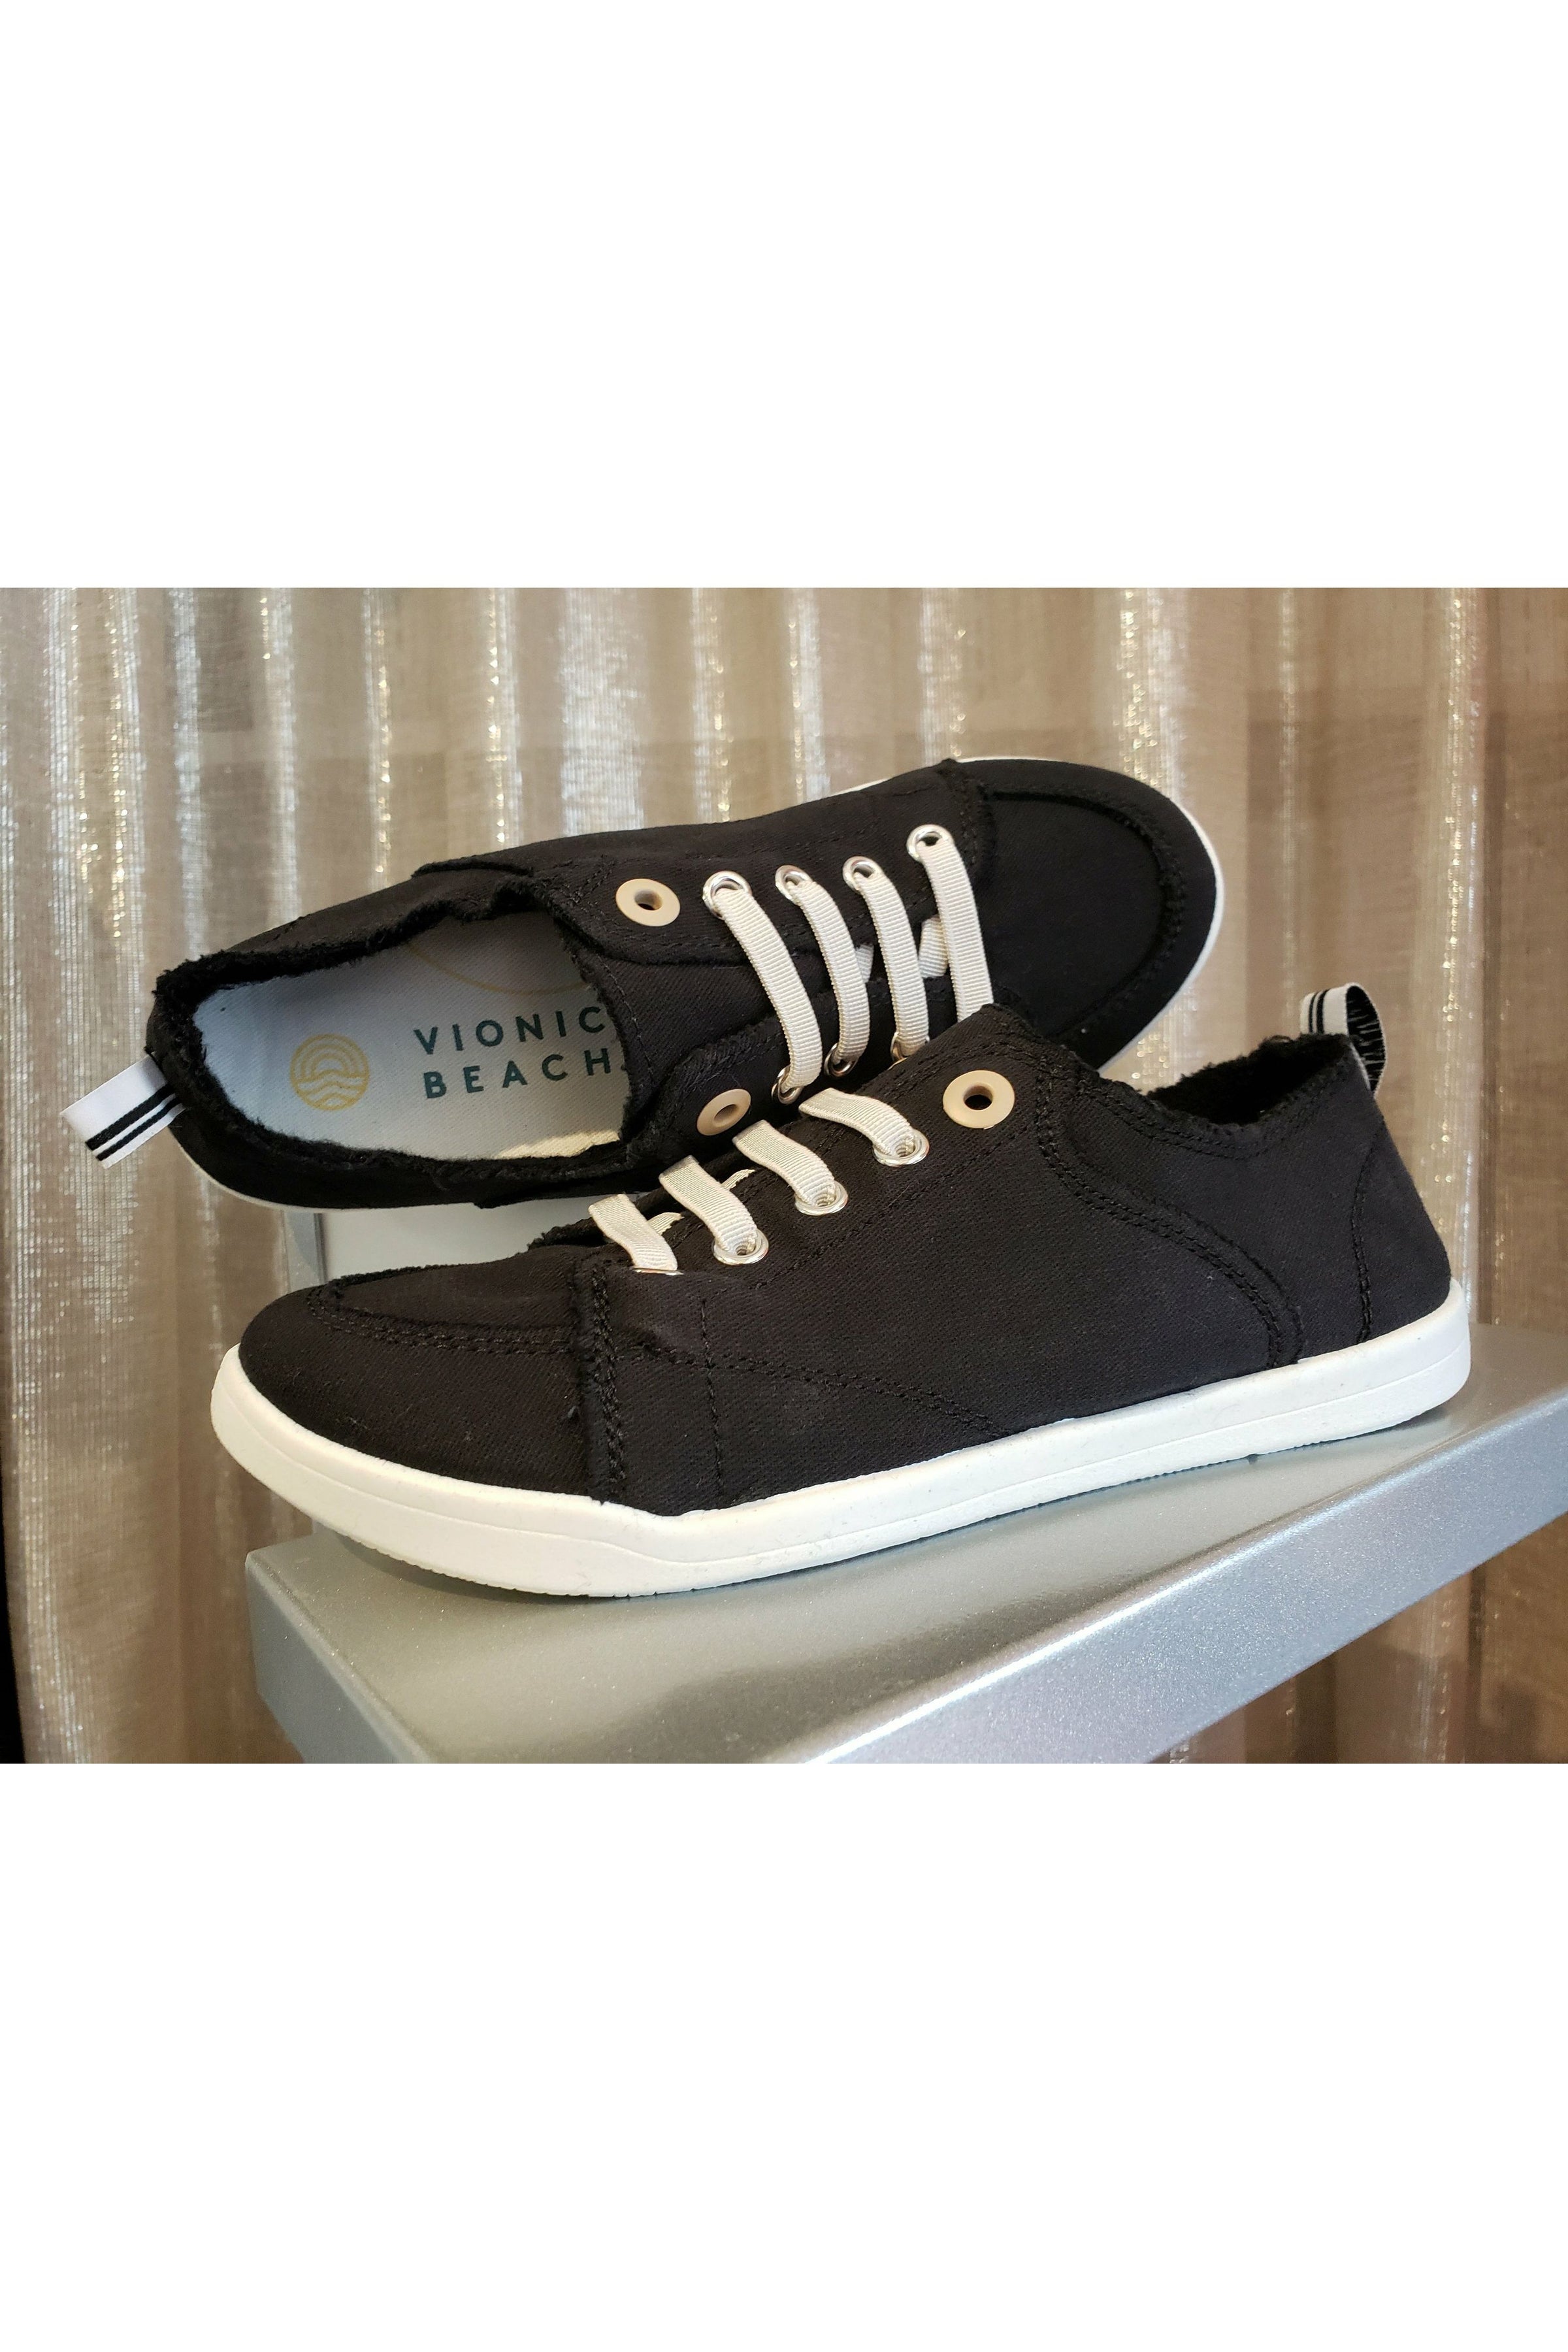 Vionic Venice Canvas Sneakers - Style Pismos CNVS, black pair